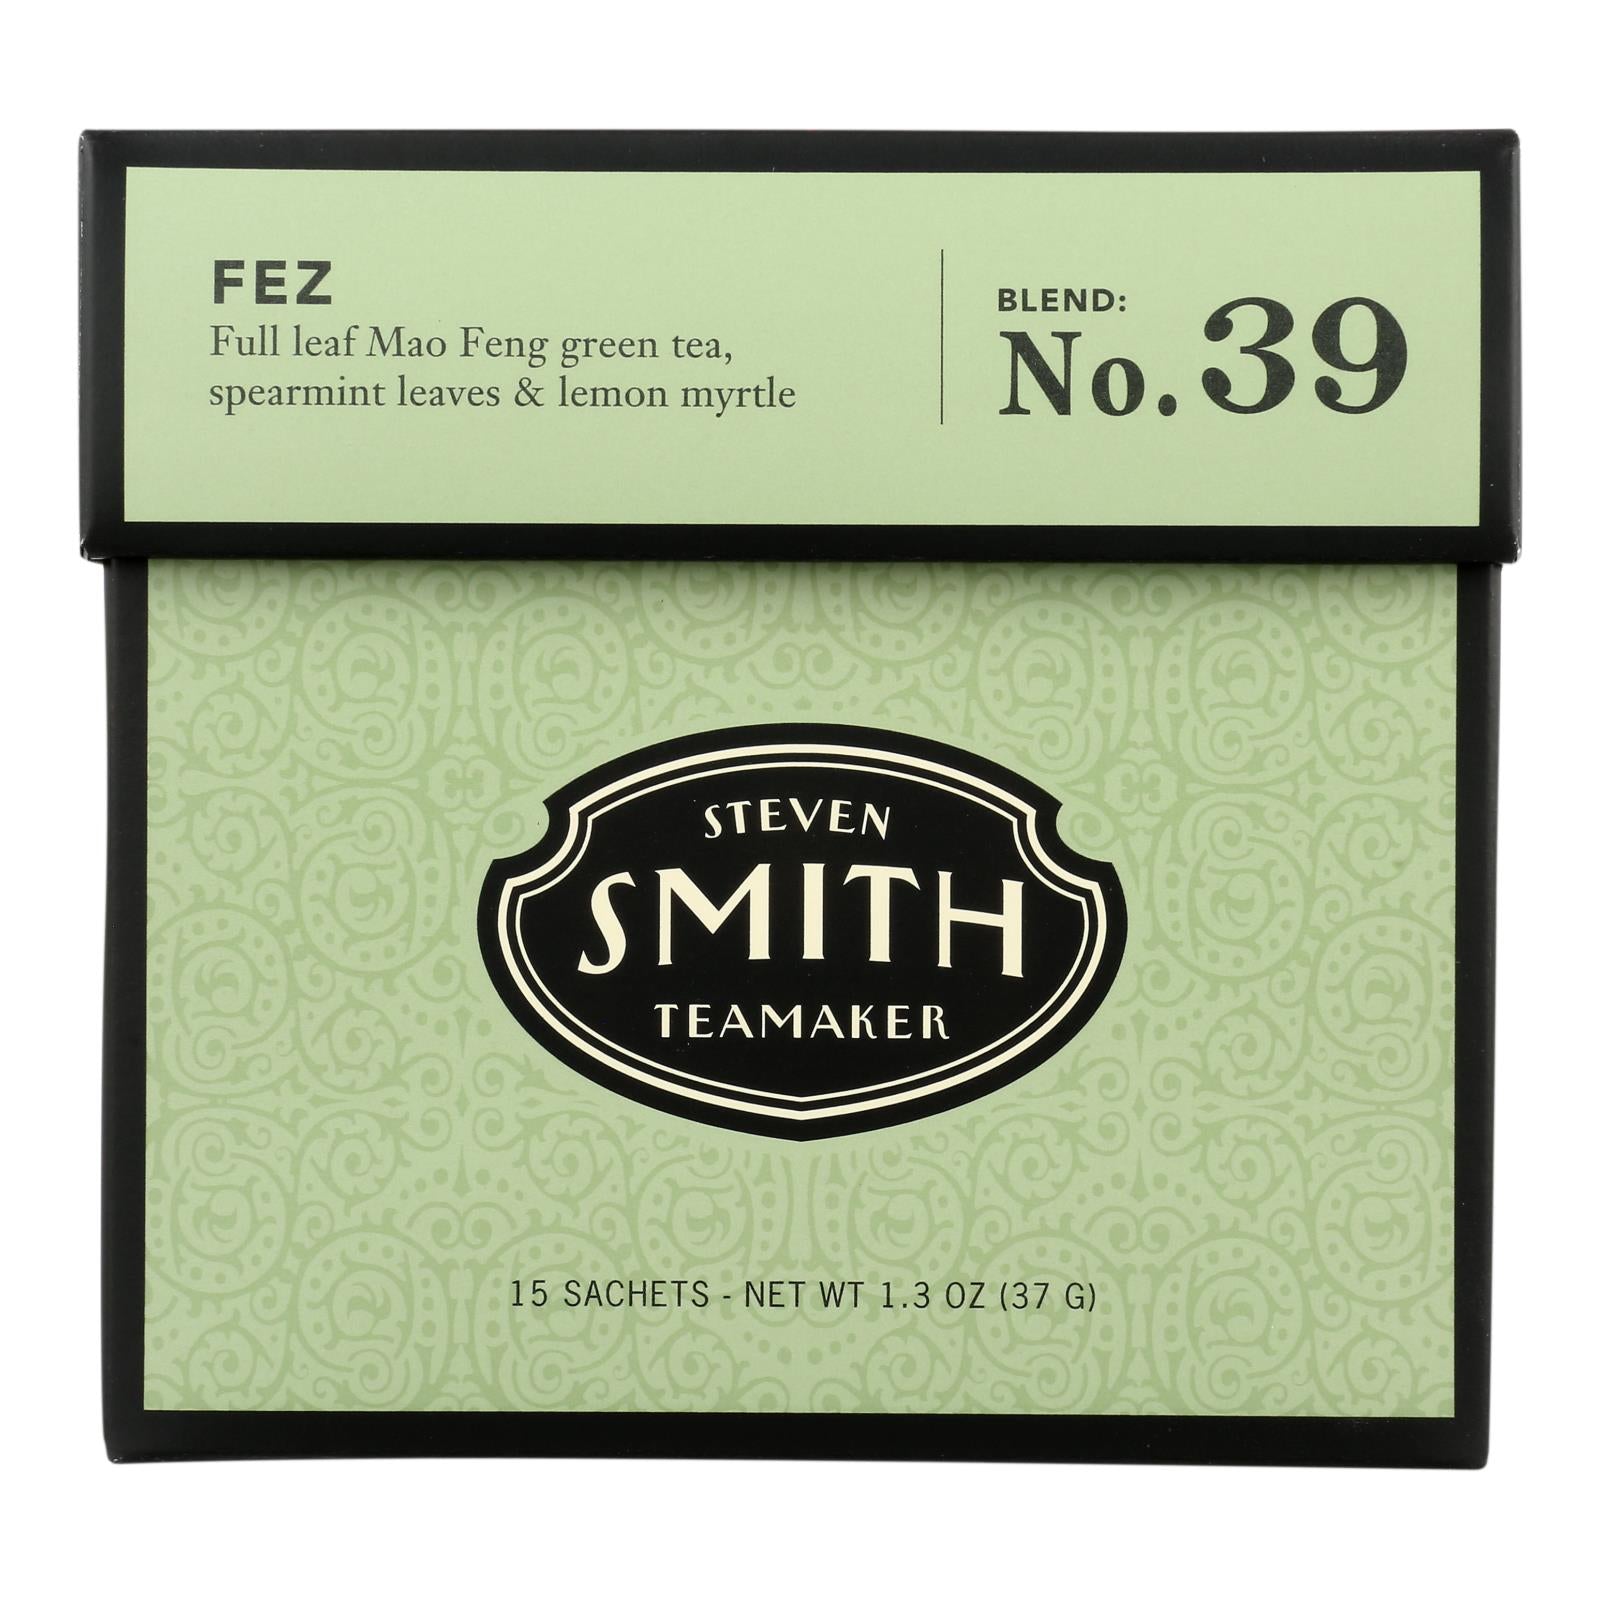 Smith Teamaker Green Tea